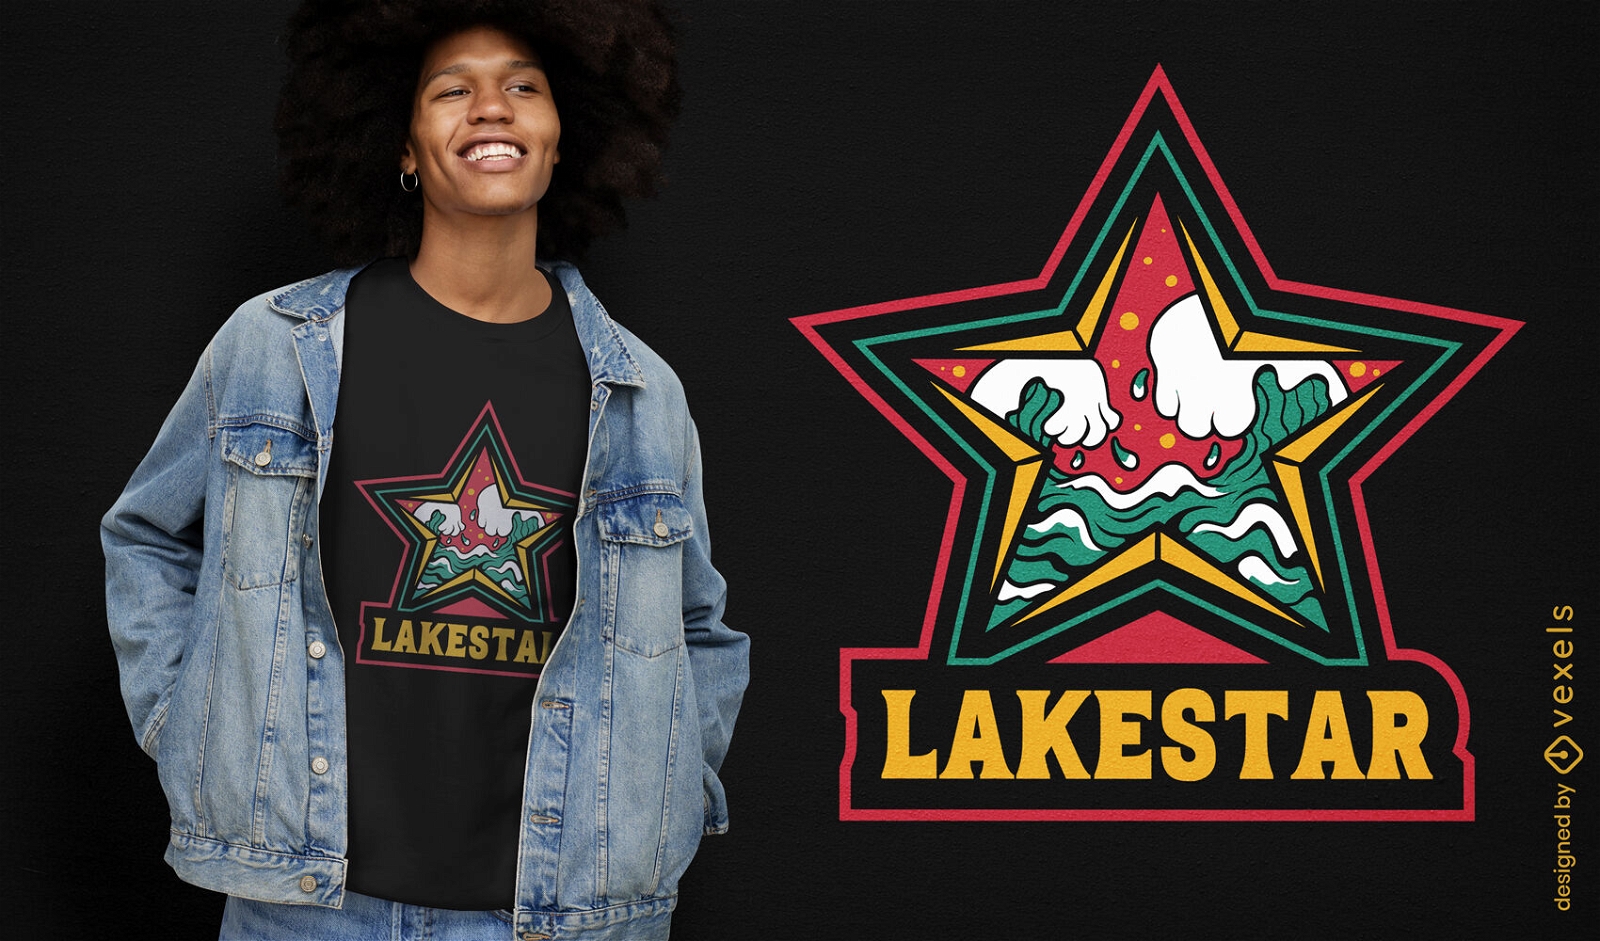 Lakestar t-shirt design